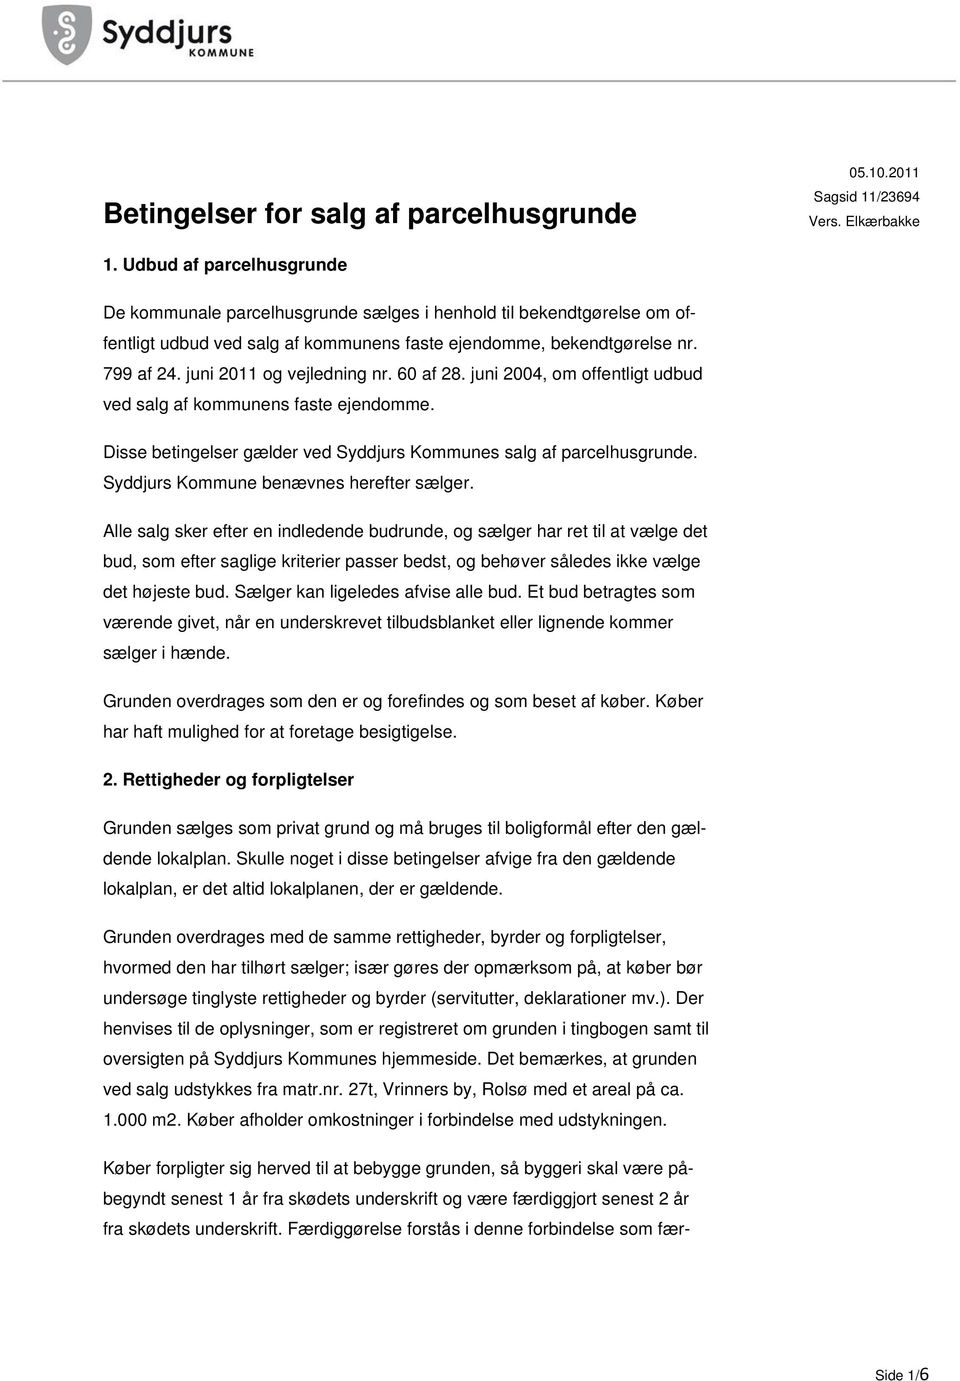 juni 2011 og vejledning nr. 60 af 28. juni 2004, om offentligt udbud ved salg af kommunens faste ejendomme. Disse betingelser gælder ved Syddjurs Kommunes salg af parcelhusgrunde.